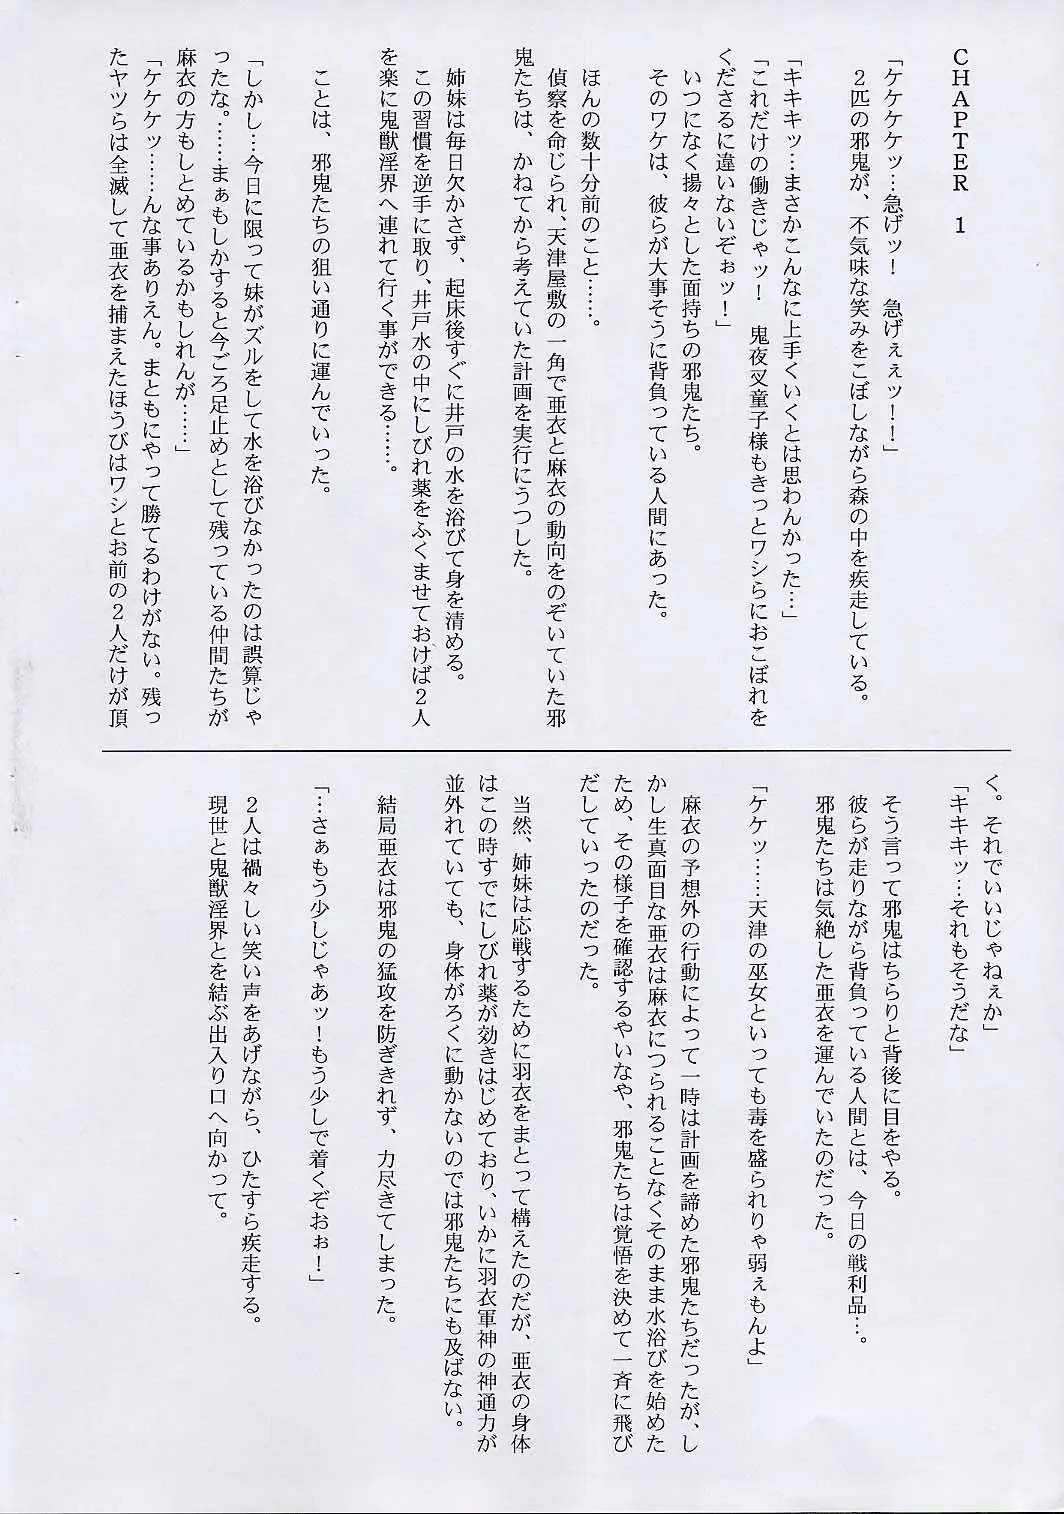 [Izumi - Reizei] Rokujuuroku - Cyclone no Copybon 4 Fhentai.net - Page 2